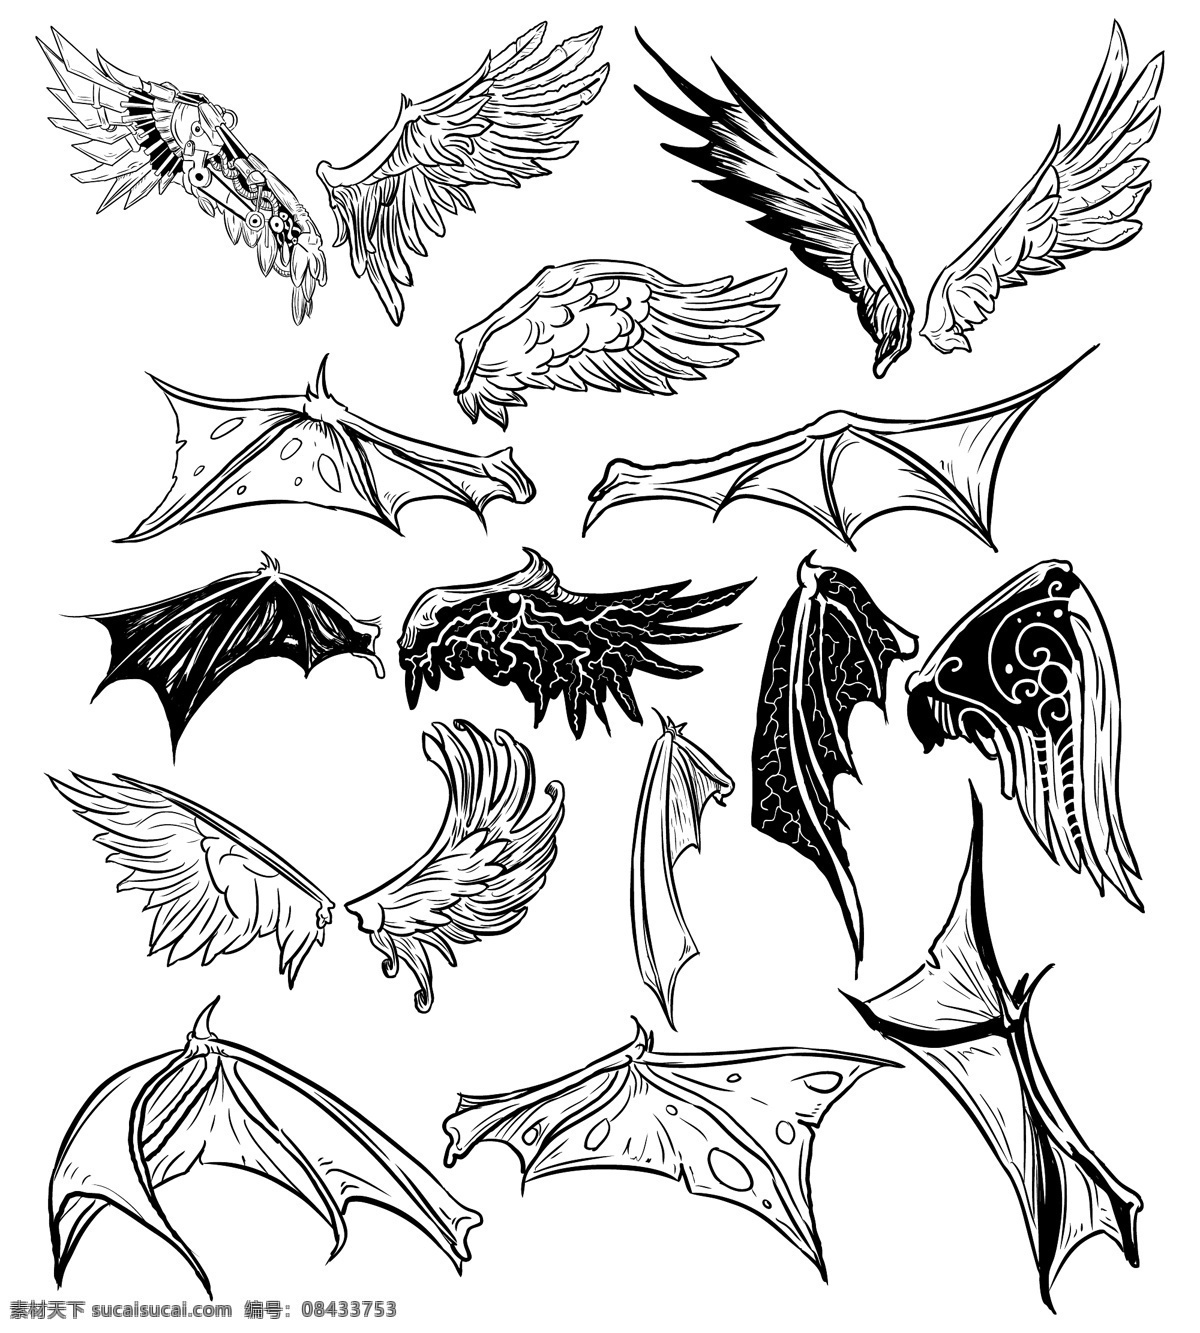 翅膀 羽毛 天使翅膀 翅膀设计 蝙蝠翅膀 翅膀素材 鸟类翅膀 纹身图案 手绘 矢量 白色